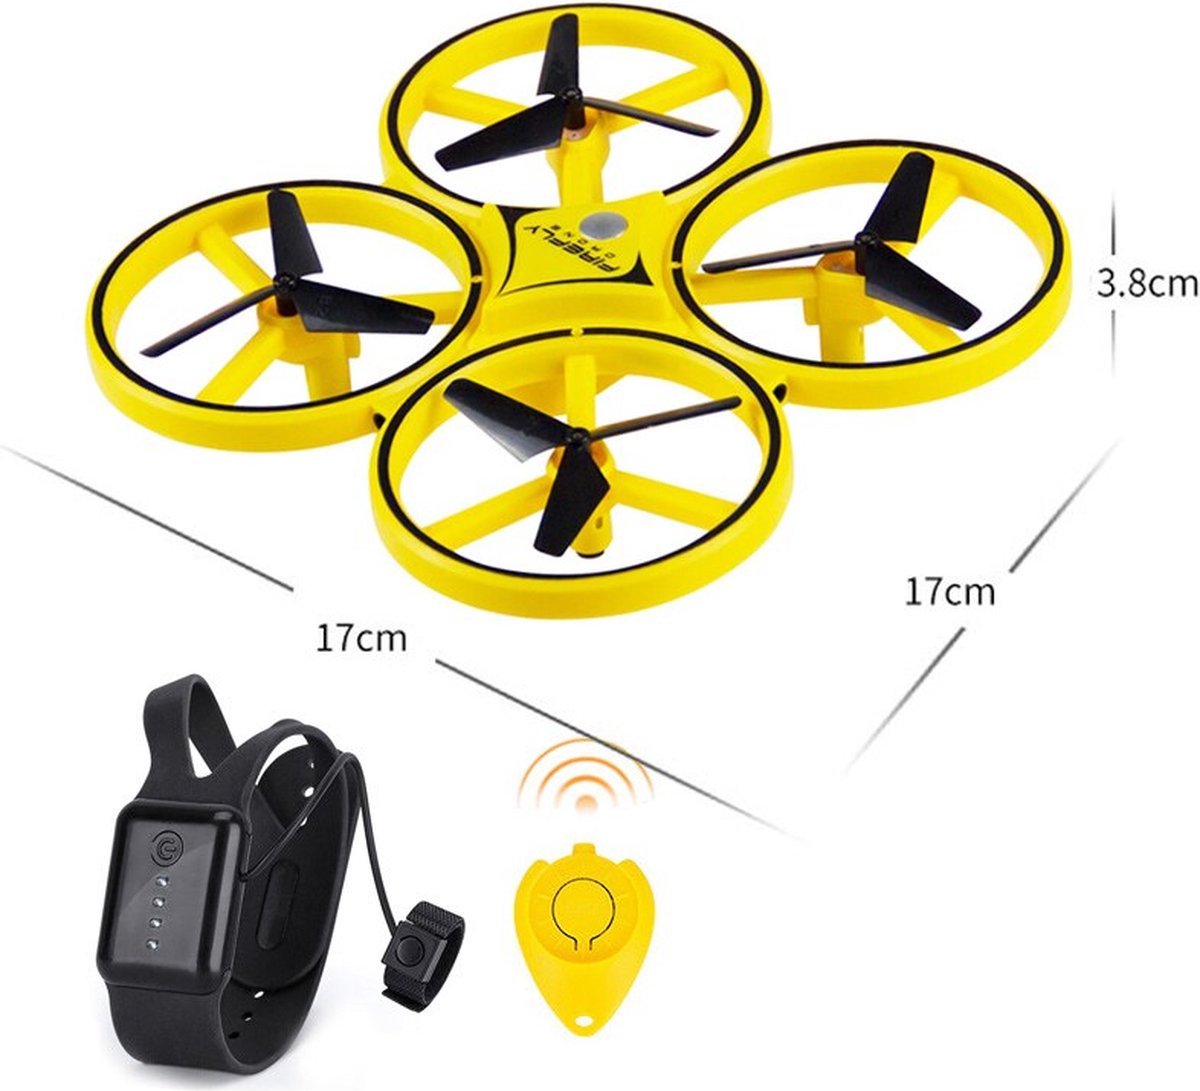 Quadcopter Hand Drone